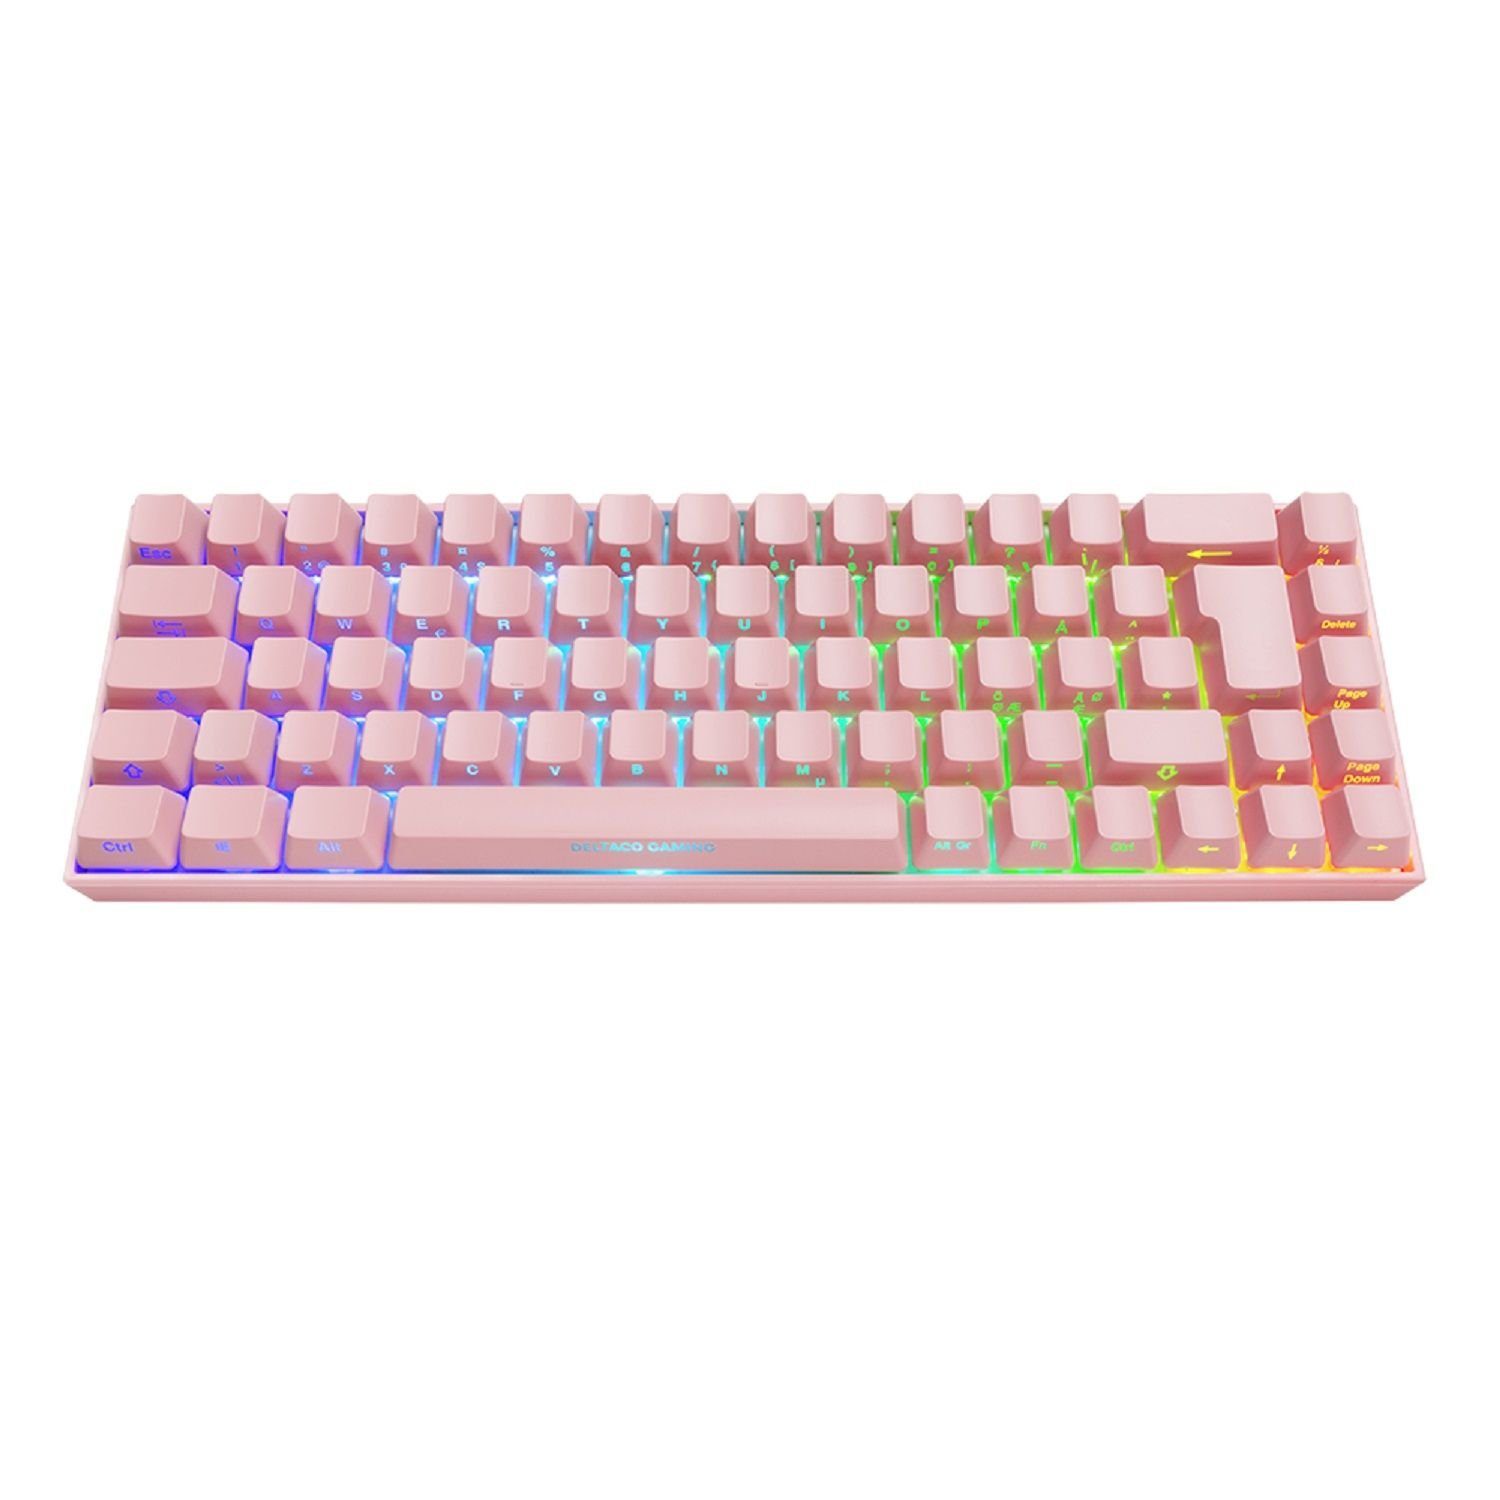 DELTACO Drahtlose Mechanische Gaming Tastatur Deutsches rosa, (mit pink Layout / Herstellergarantie) Gaming-Tastatur inkl. RGB-Beleuchtung, 5 Jahre